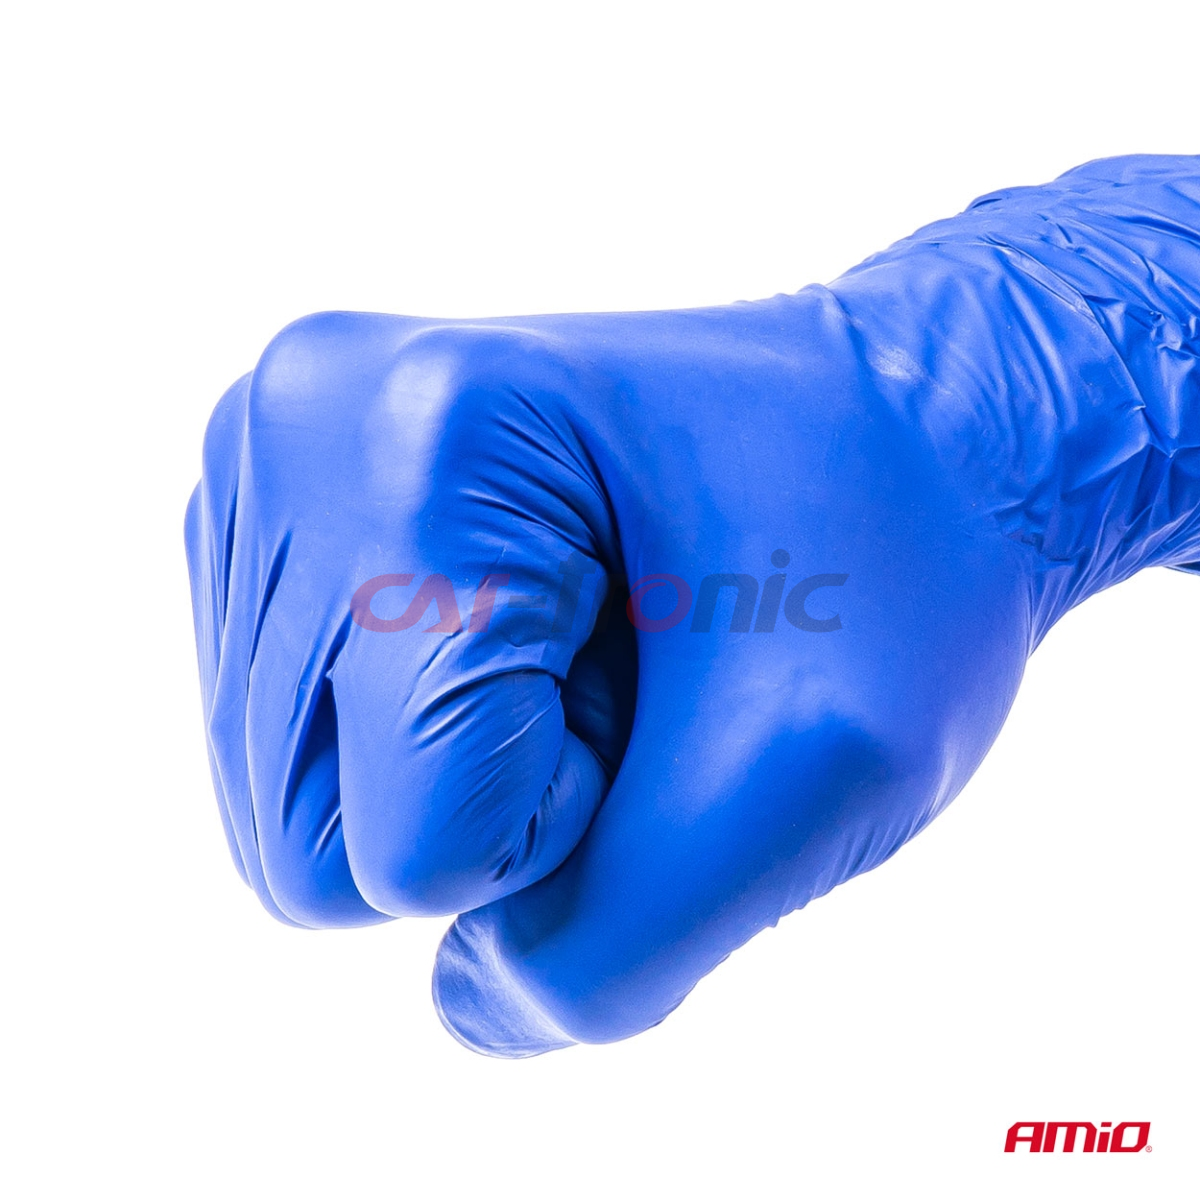 Rękawice nitrylowe niebieskie Mercator Nitrylex Basic rozmiar M 100 szt.